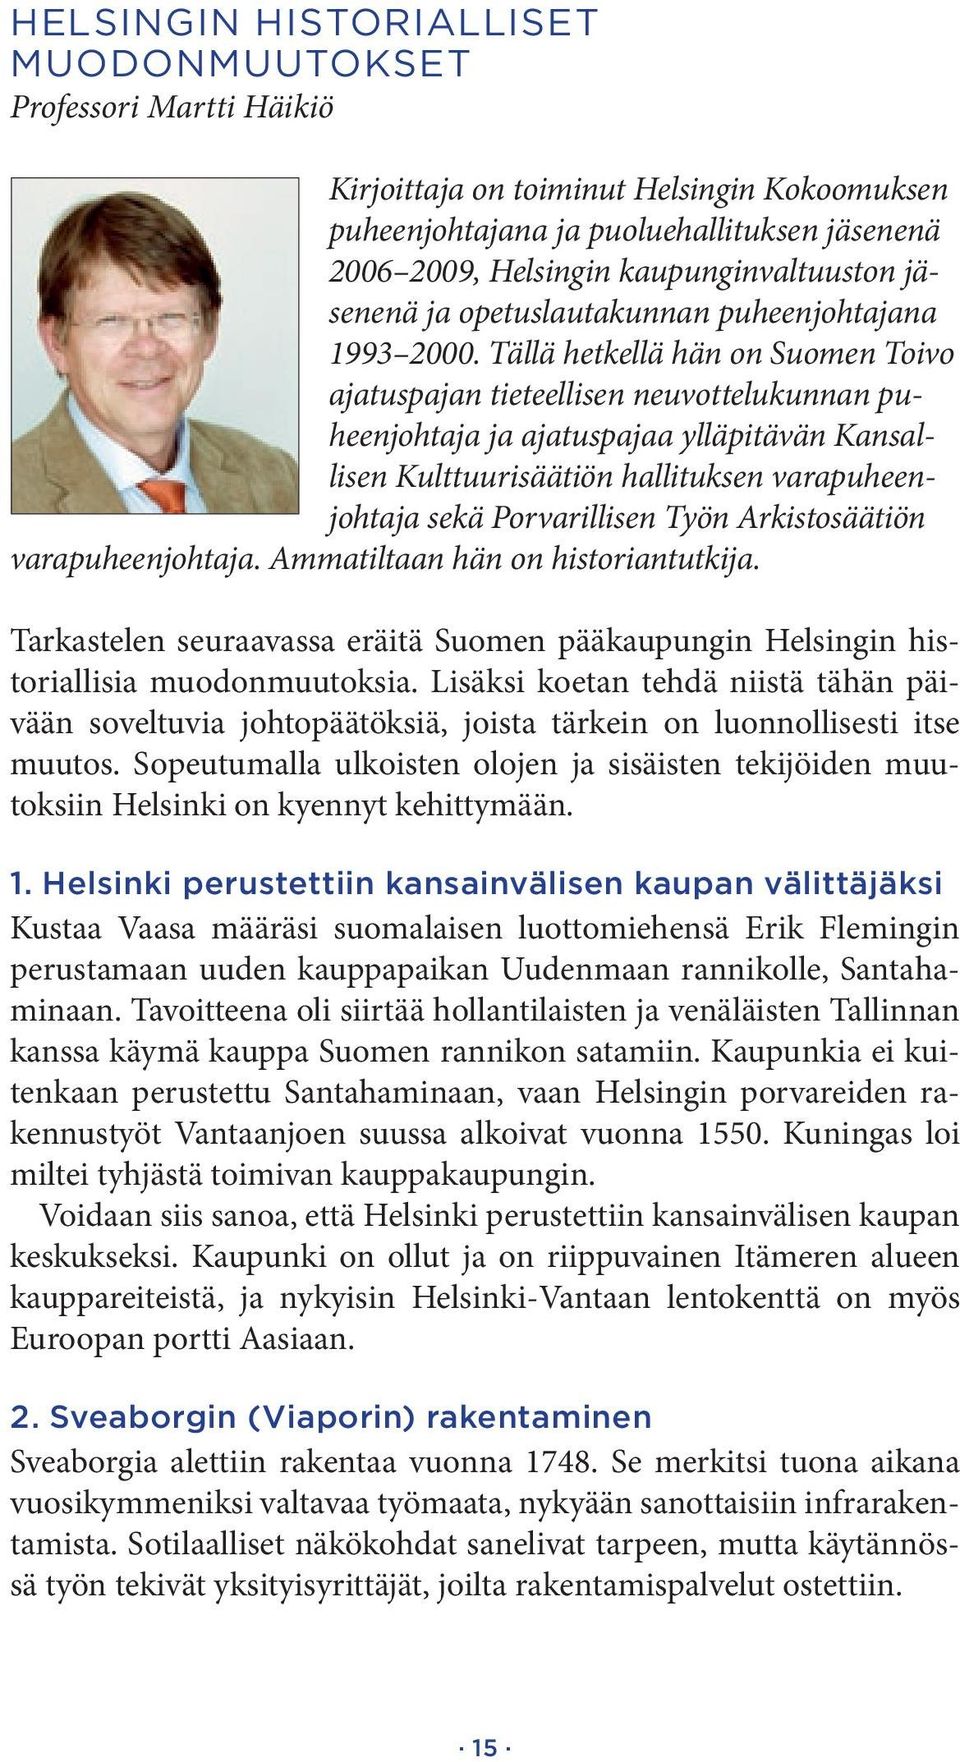 Tällä hetkellä hän on Suomen Toivo ajatuspajan tieteellisen neuvottelukunnan puheenjohtaja ja ajatuspajaa ylläpitävän Kansallisen Kulttuurisäätiön hallituksen varapuheenjohtaja sekä Porvarillisen